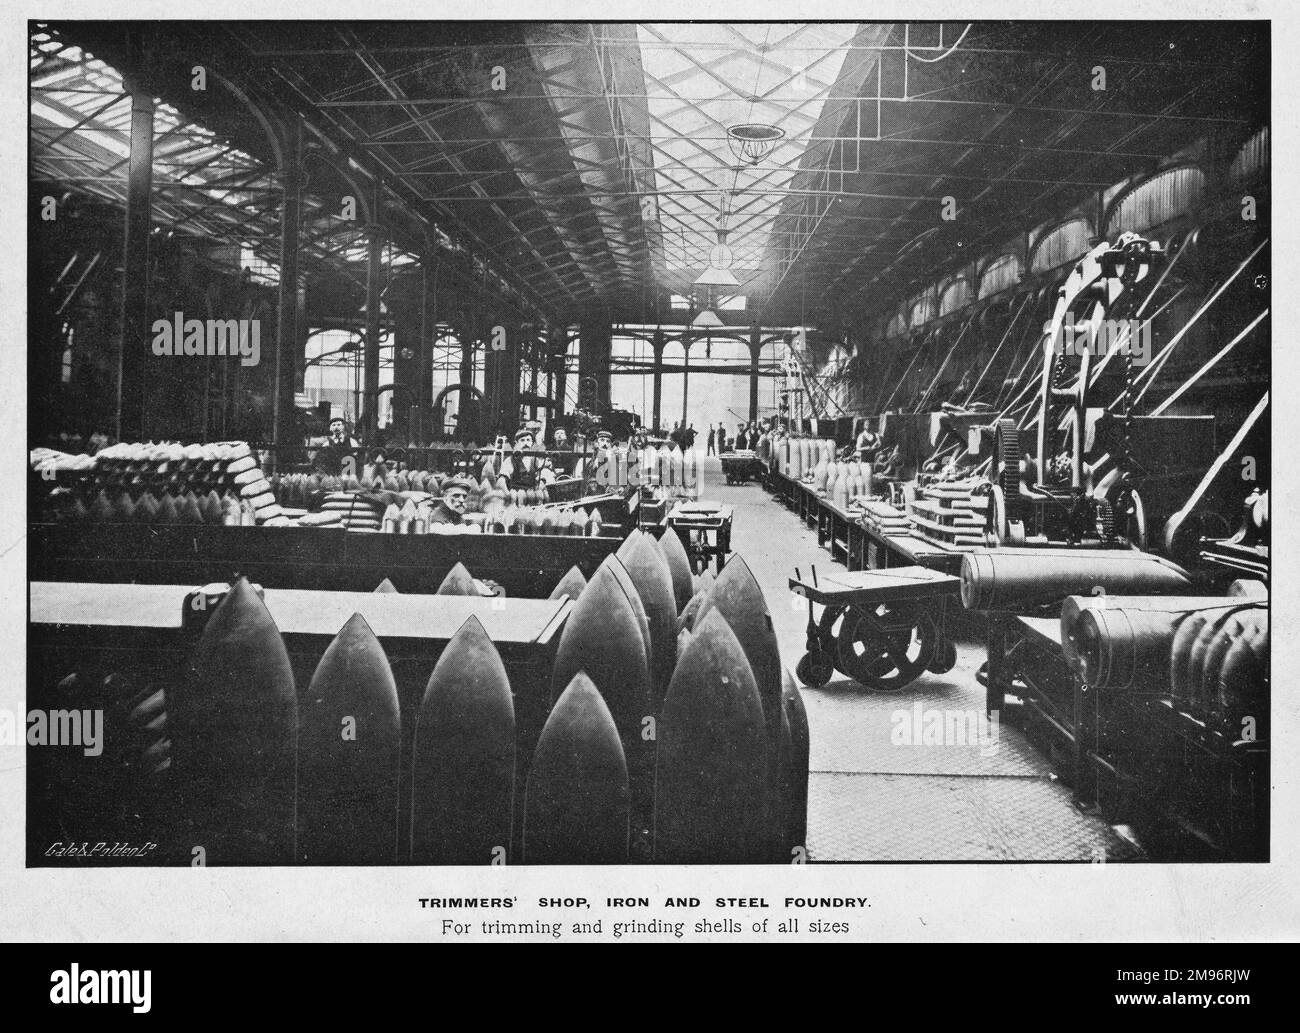 Vista del negozio di trimmer nella fonderia di ferro e acciaio, Woolwich Arsenal, sud-est di Londra, per la rifilatura e la macinazione di conchiglie di tutte le dimensioni. Foto Stock